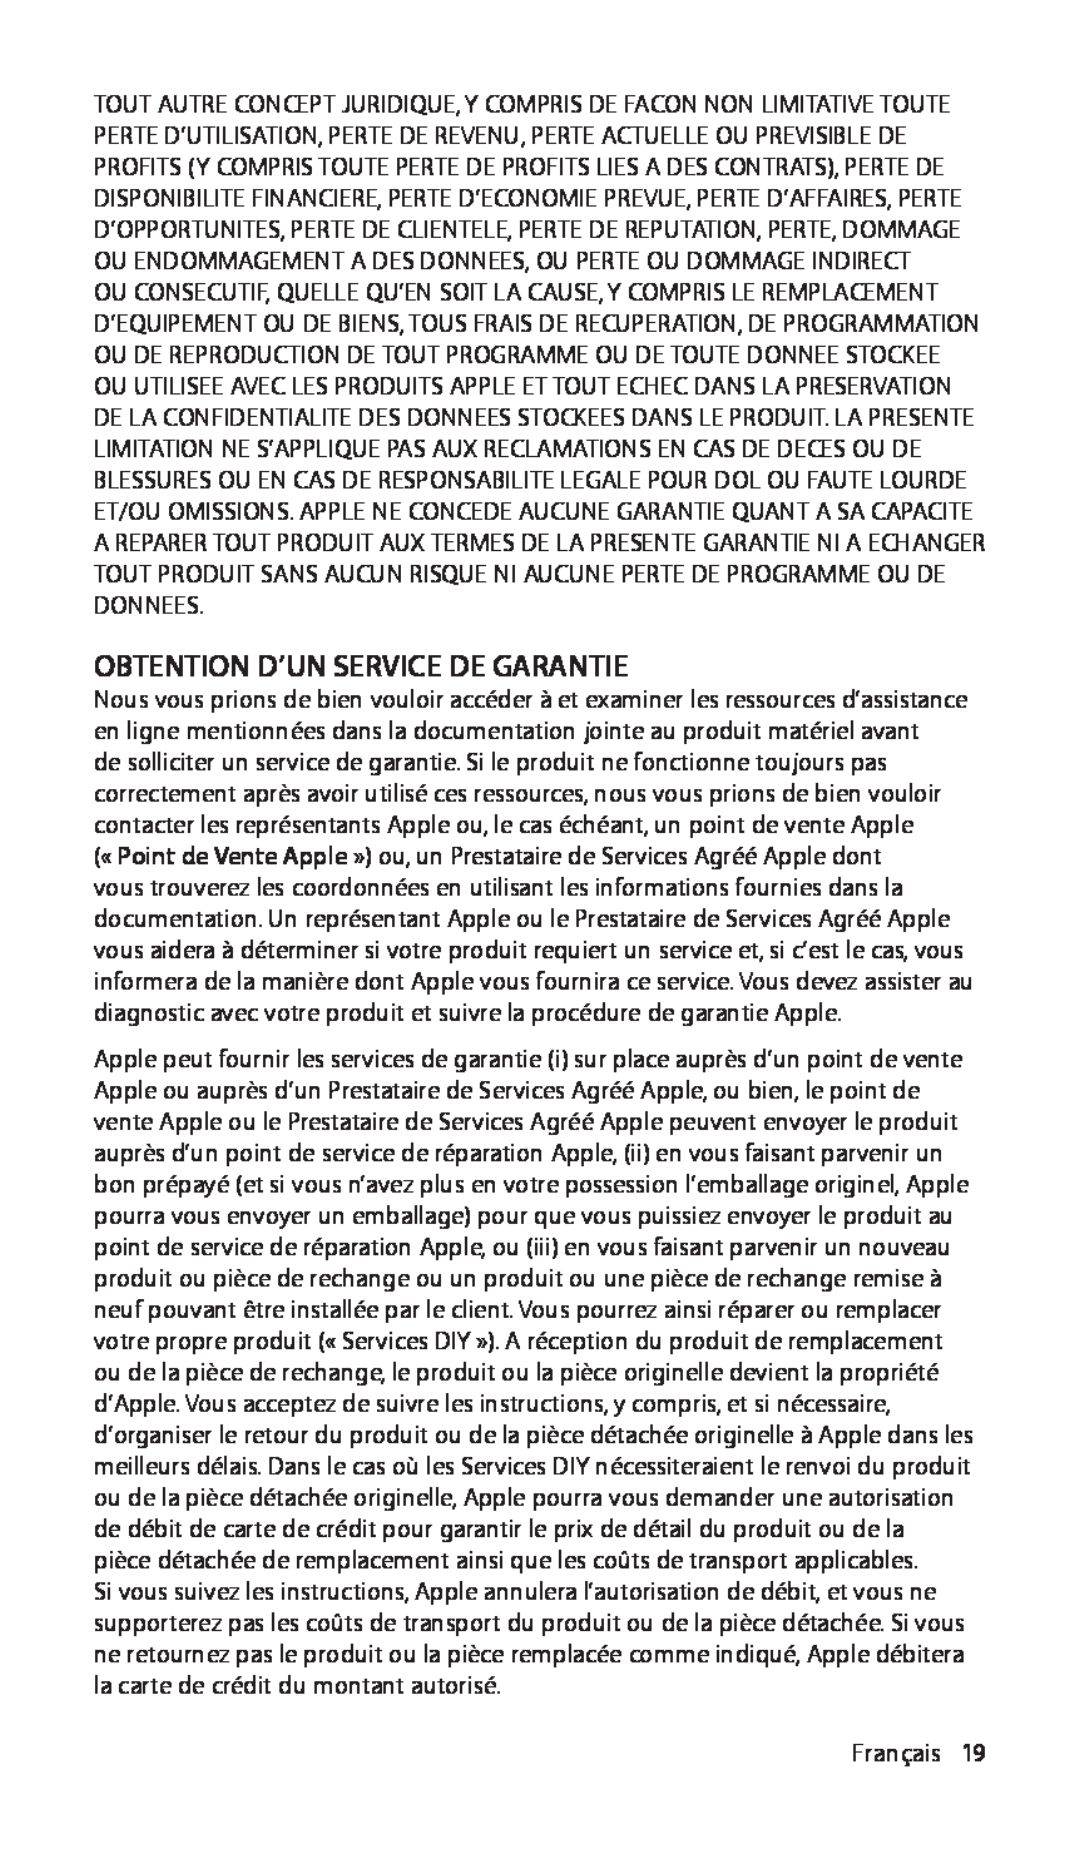 Apple ZM034-4942-A manual Obtention D’Un Service De Garantie, Français19 